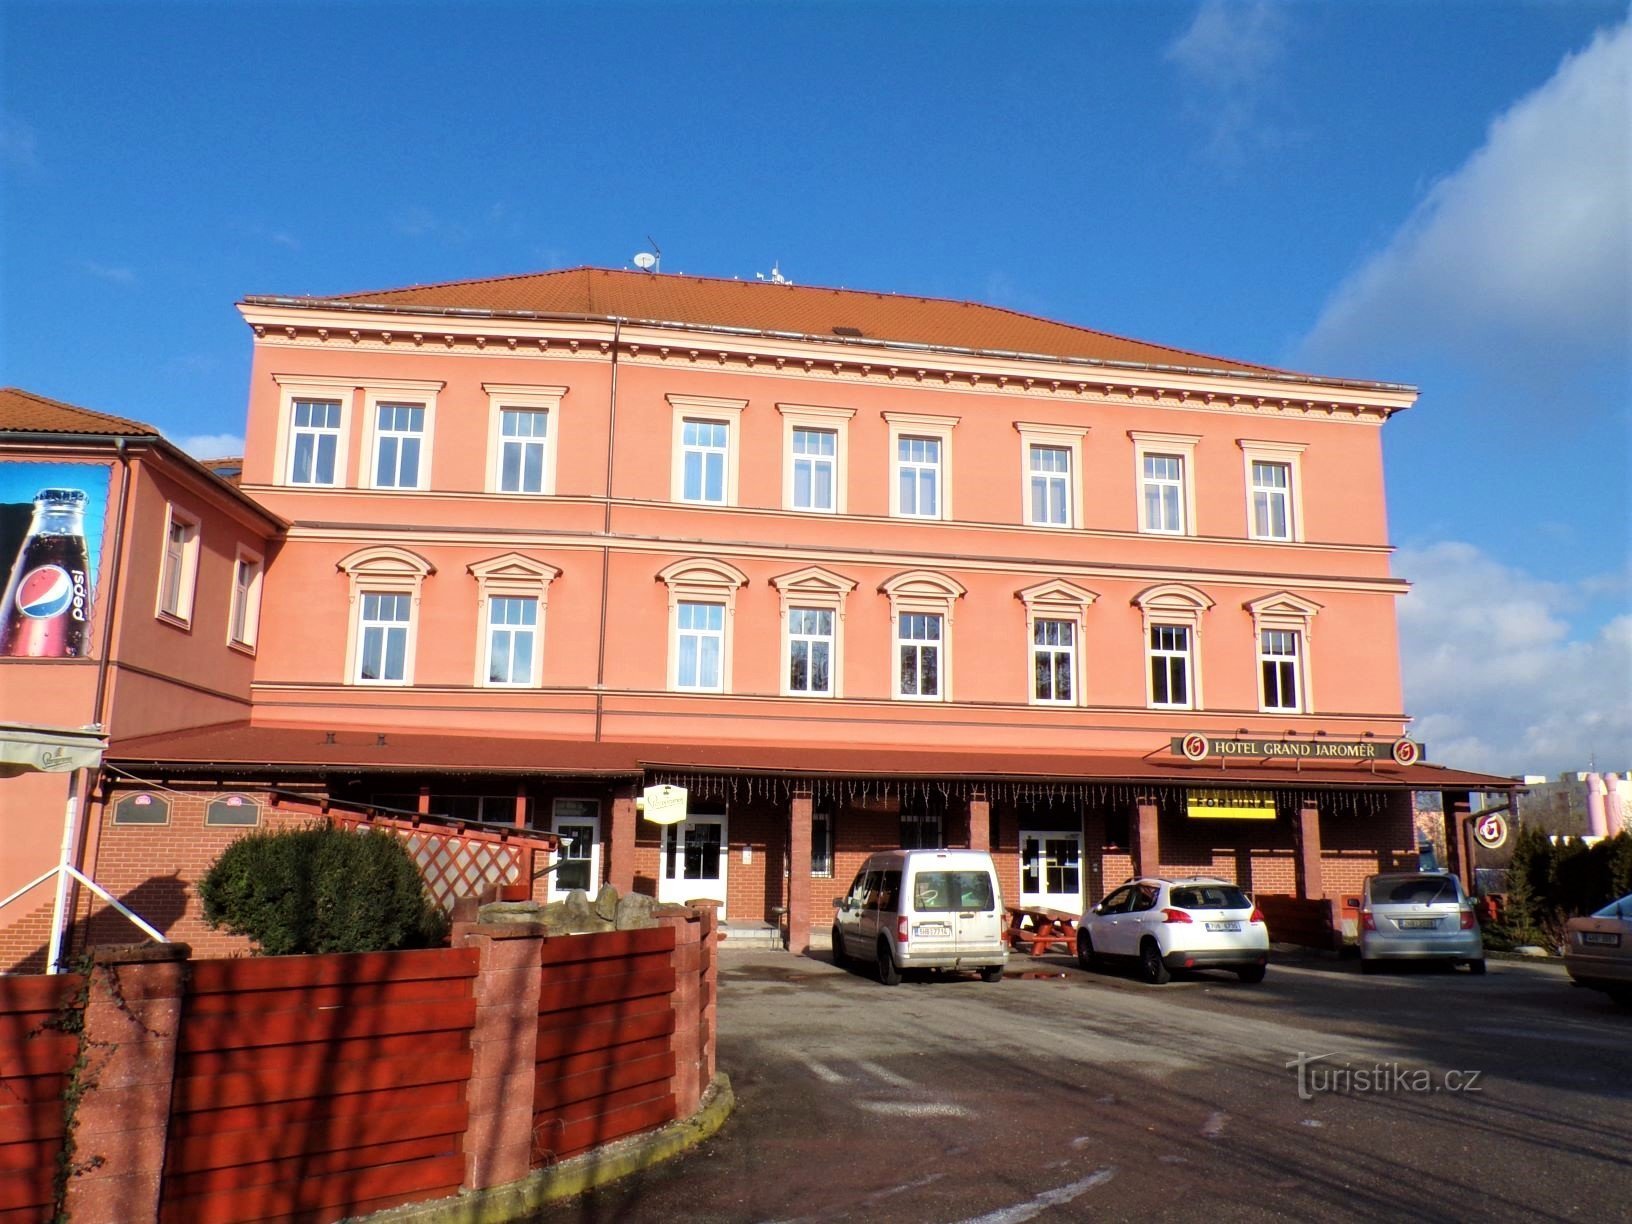 Hôtel Grand (Jaroměř, 25.1.2021)